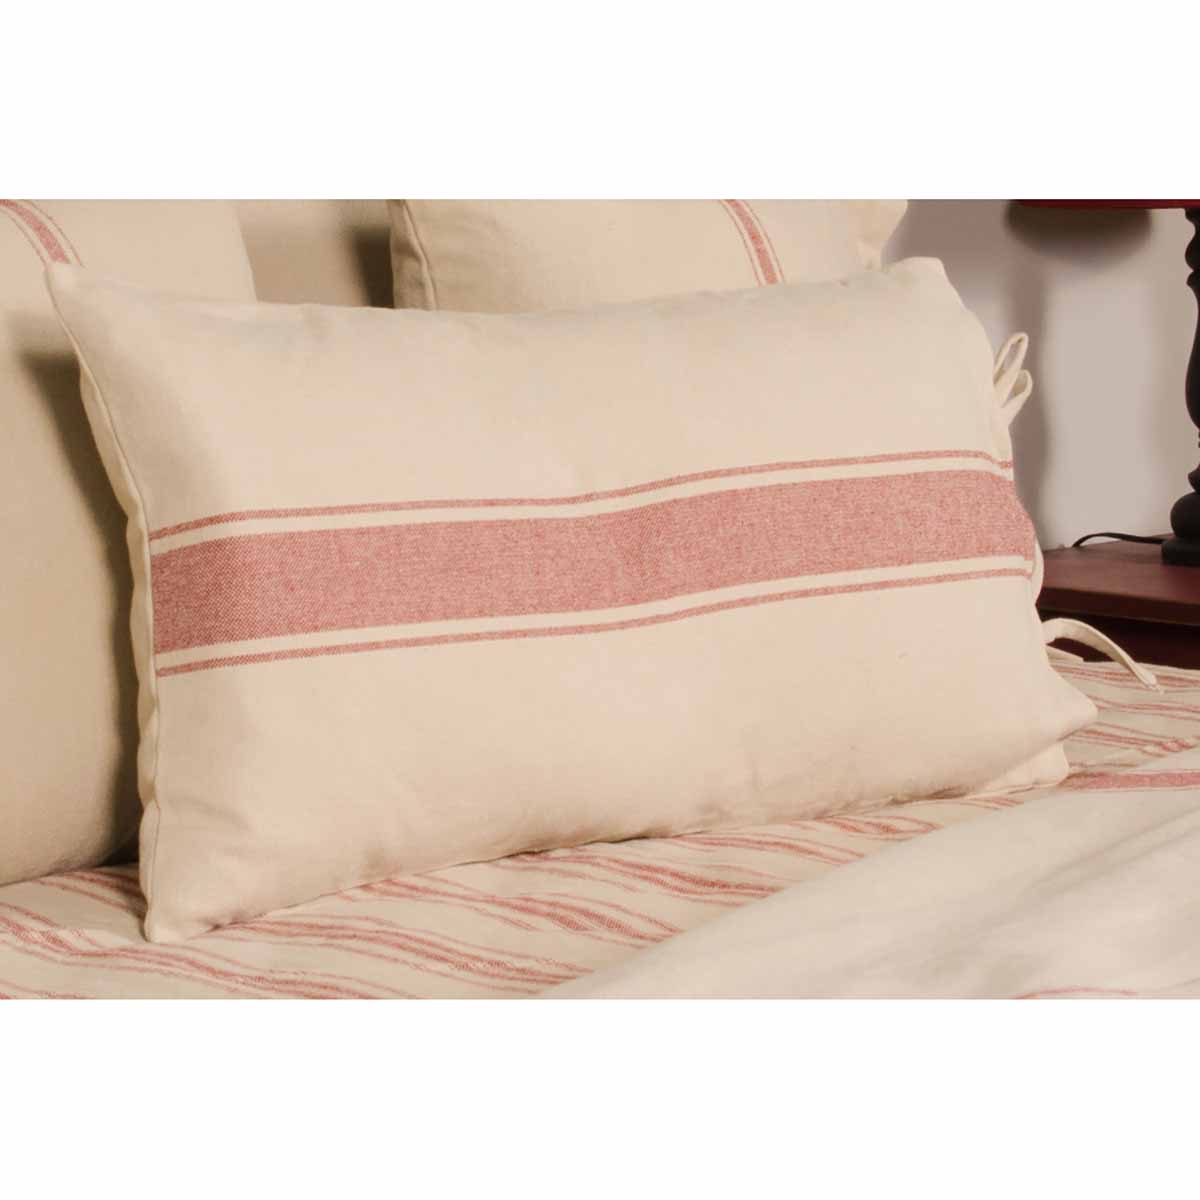 Pillow - Grain Sack Stripe, Oat Red, Long